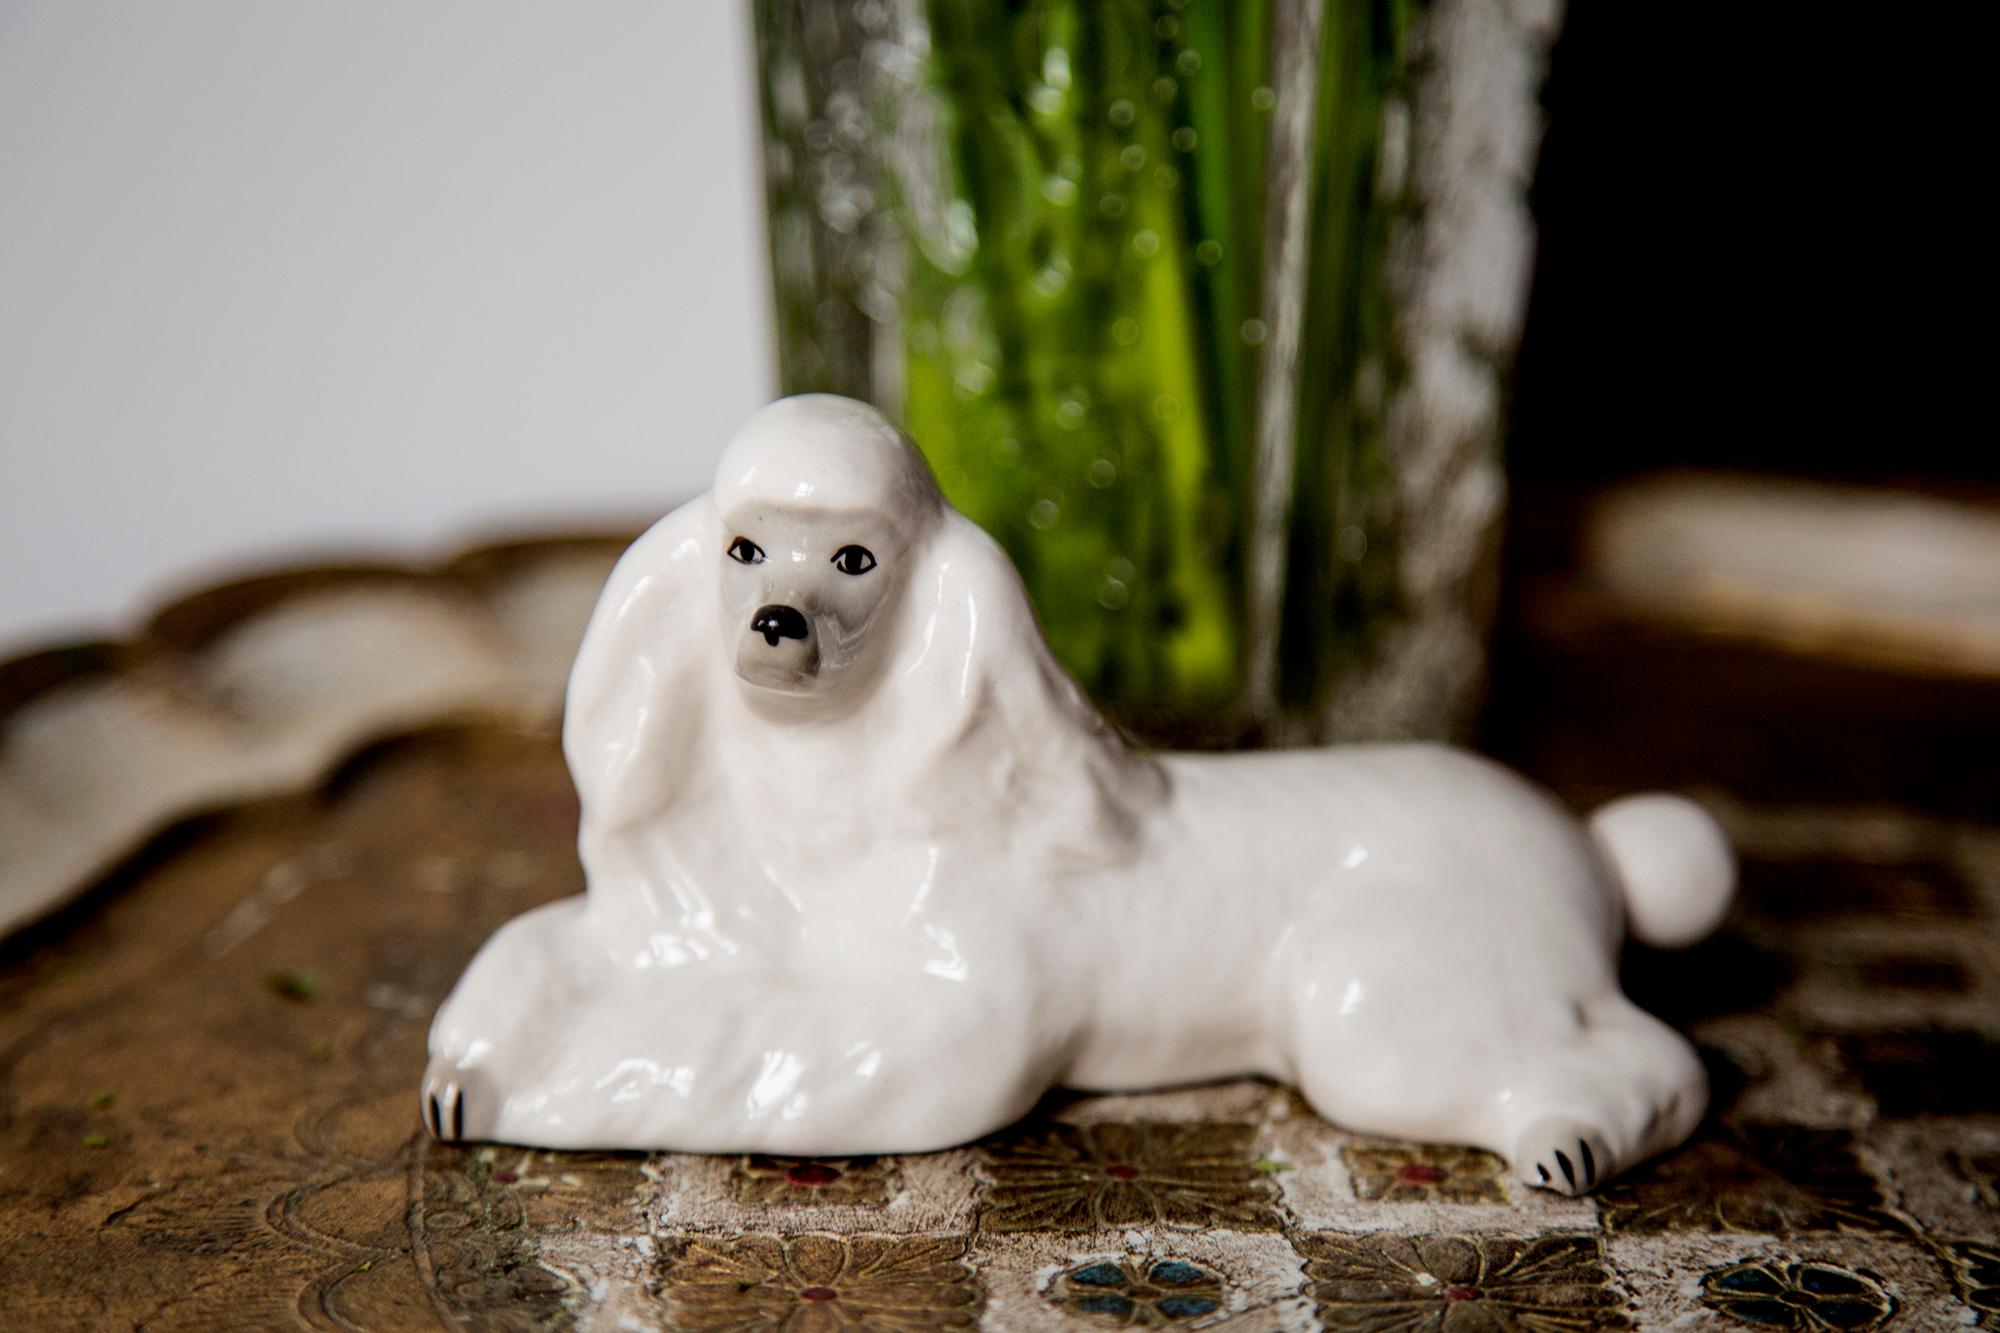 Bemalte Keramik, sehr guter originaler Vintage-Zustand. Keine Schäden oder Risse. Schöne und einzigartige dekorative Skulptur. White Poodle Dog Sculpture wurde in England hergestellt. Nur ein Hund verfügbar.